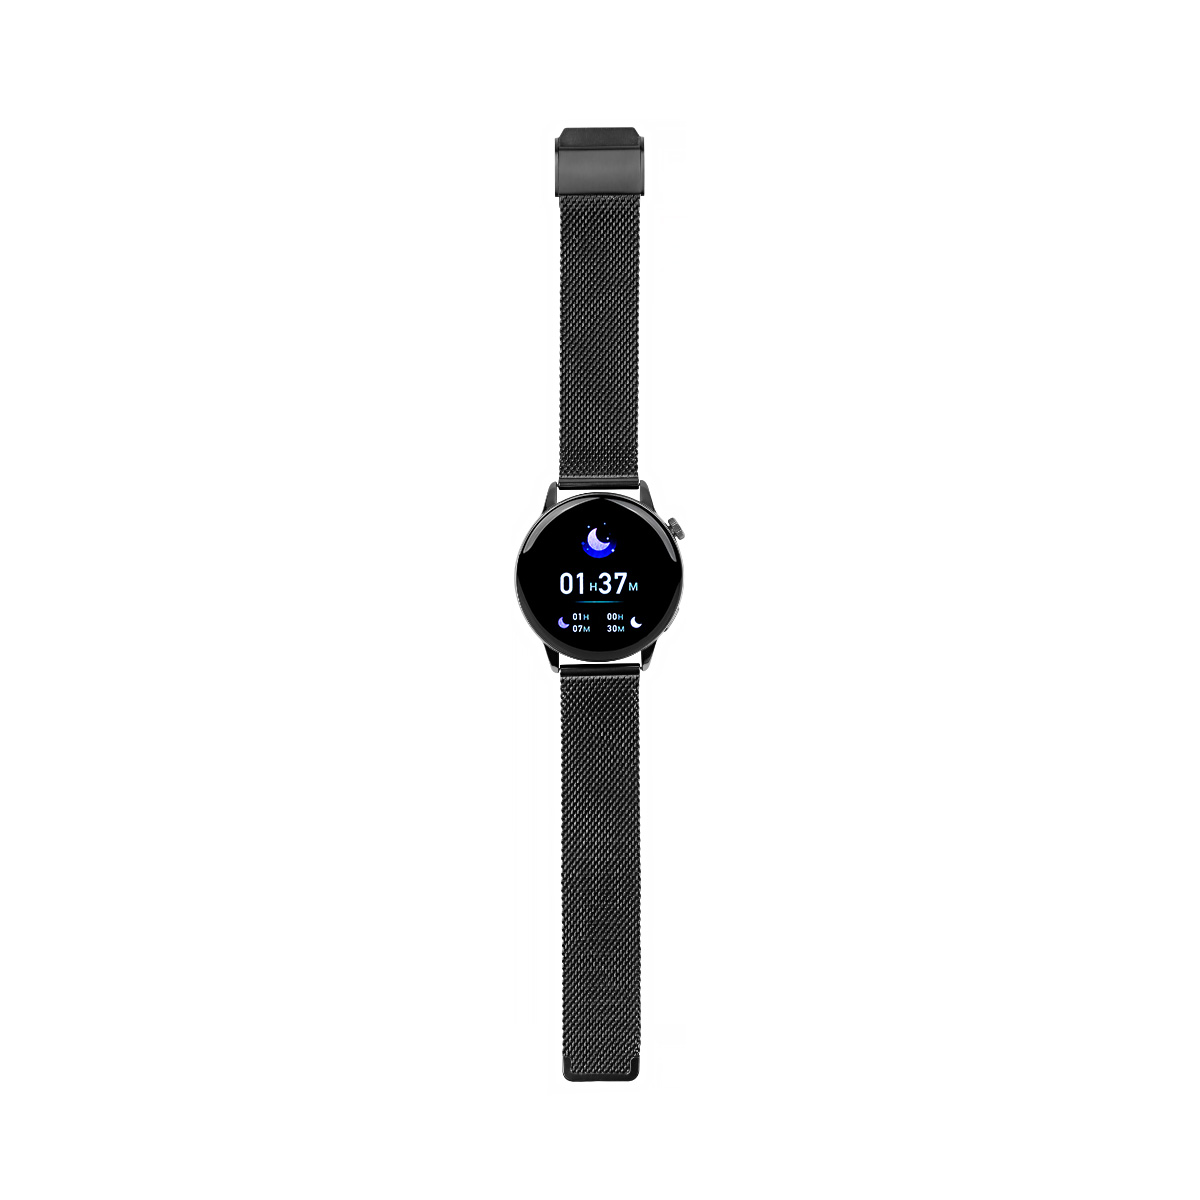 Maxcom FW58 Vanad Pro Smartwatch Zwart